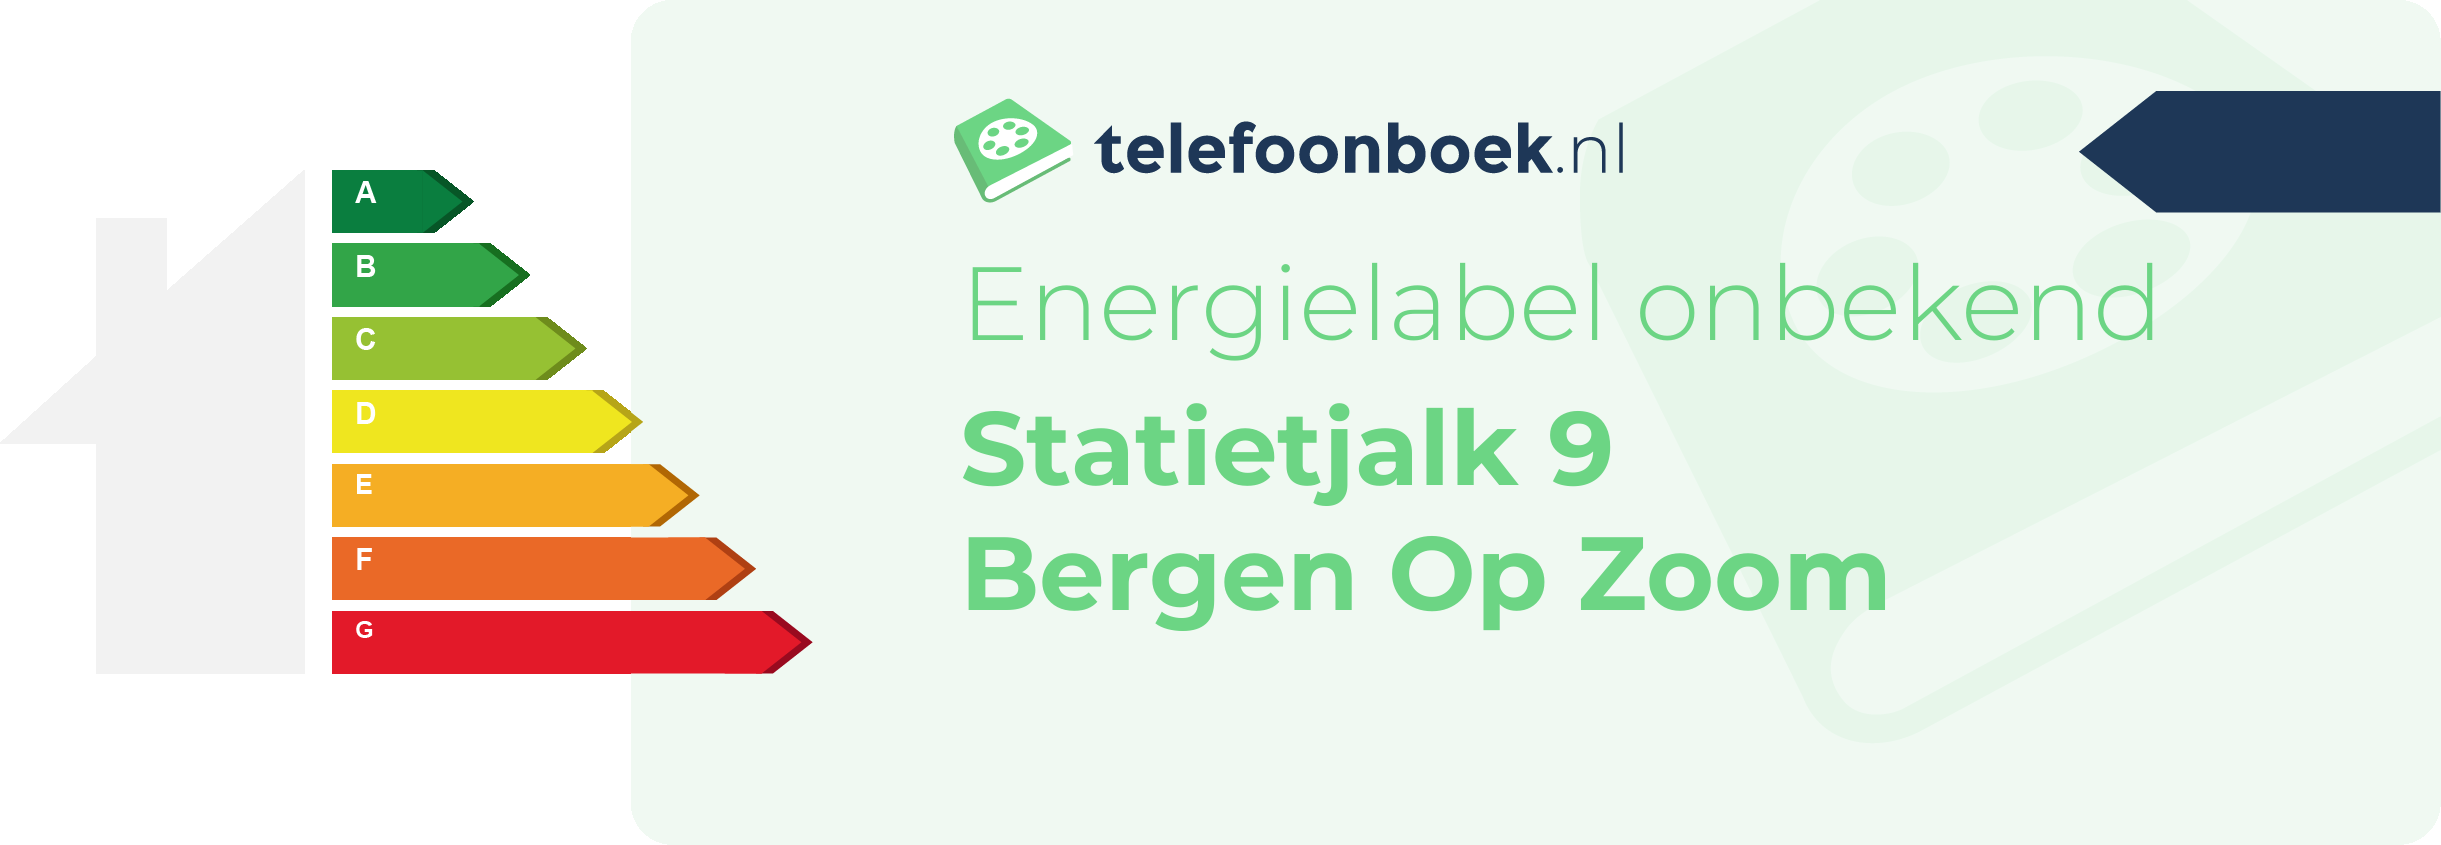 Energielabel Statietjalk 9 Bergen Op Zoom